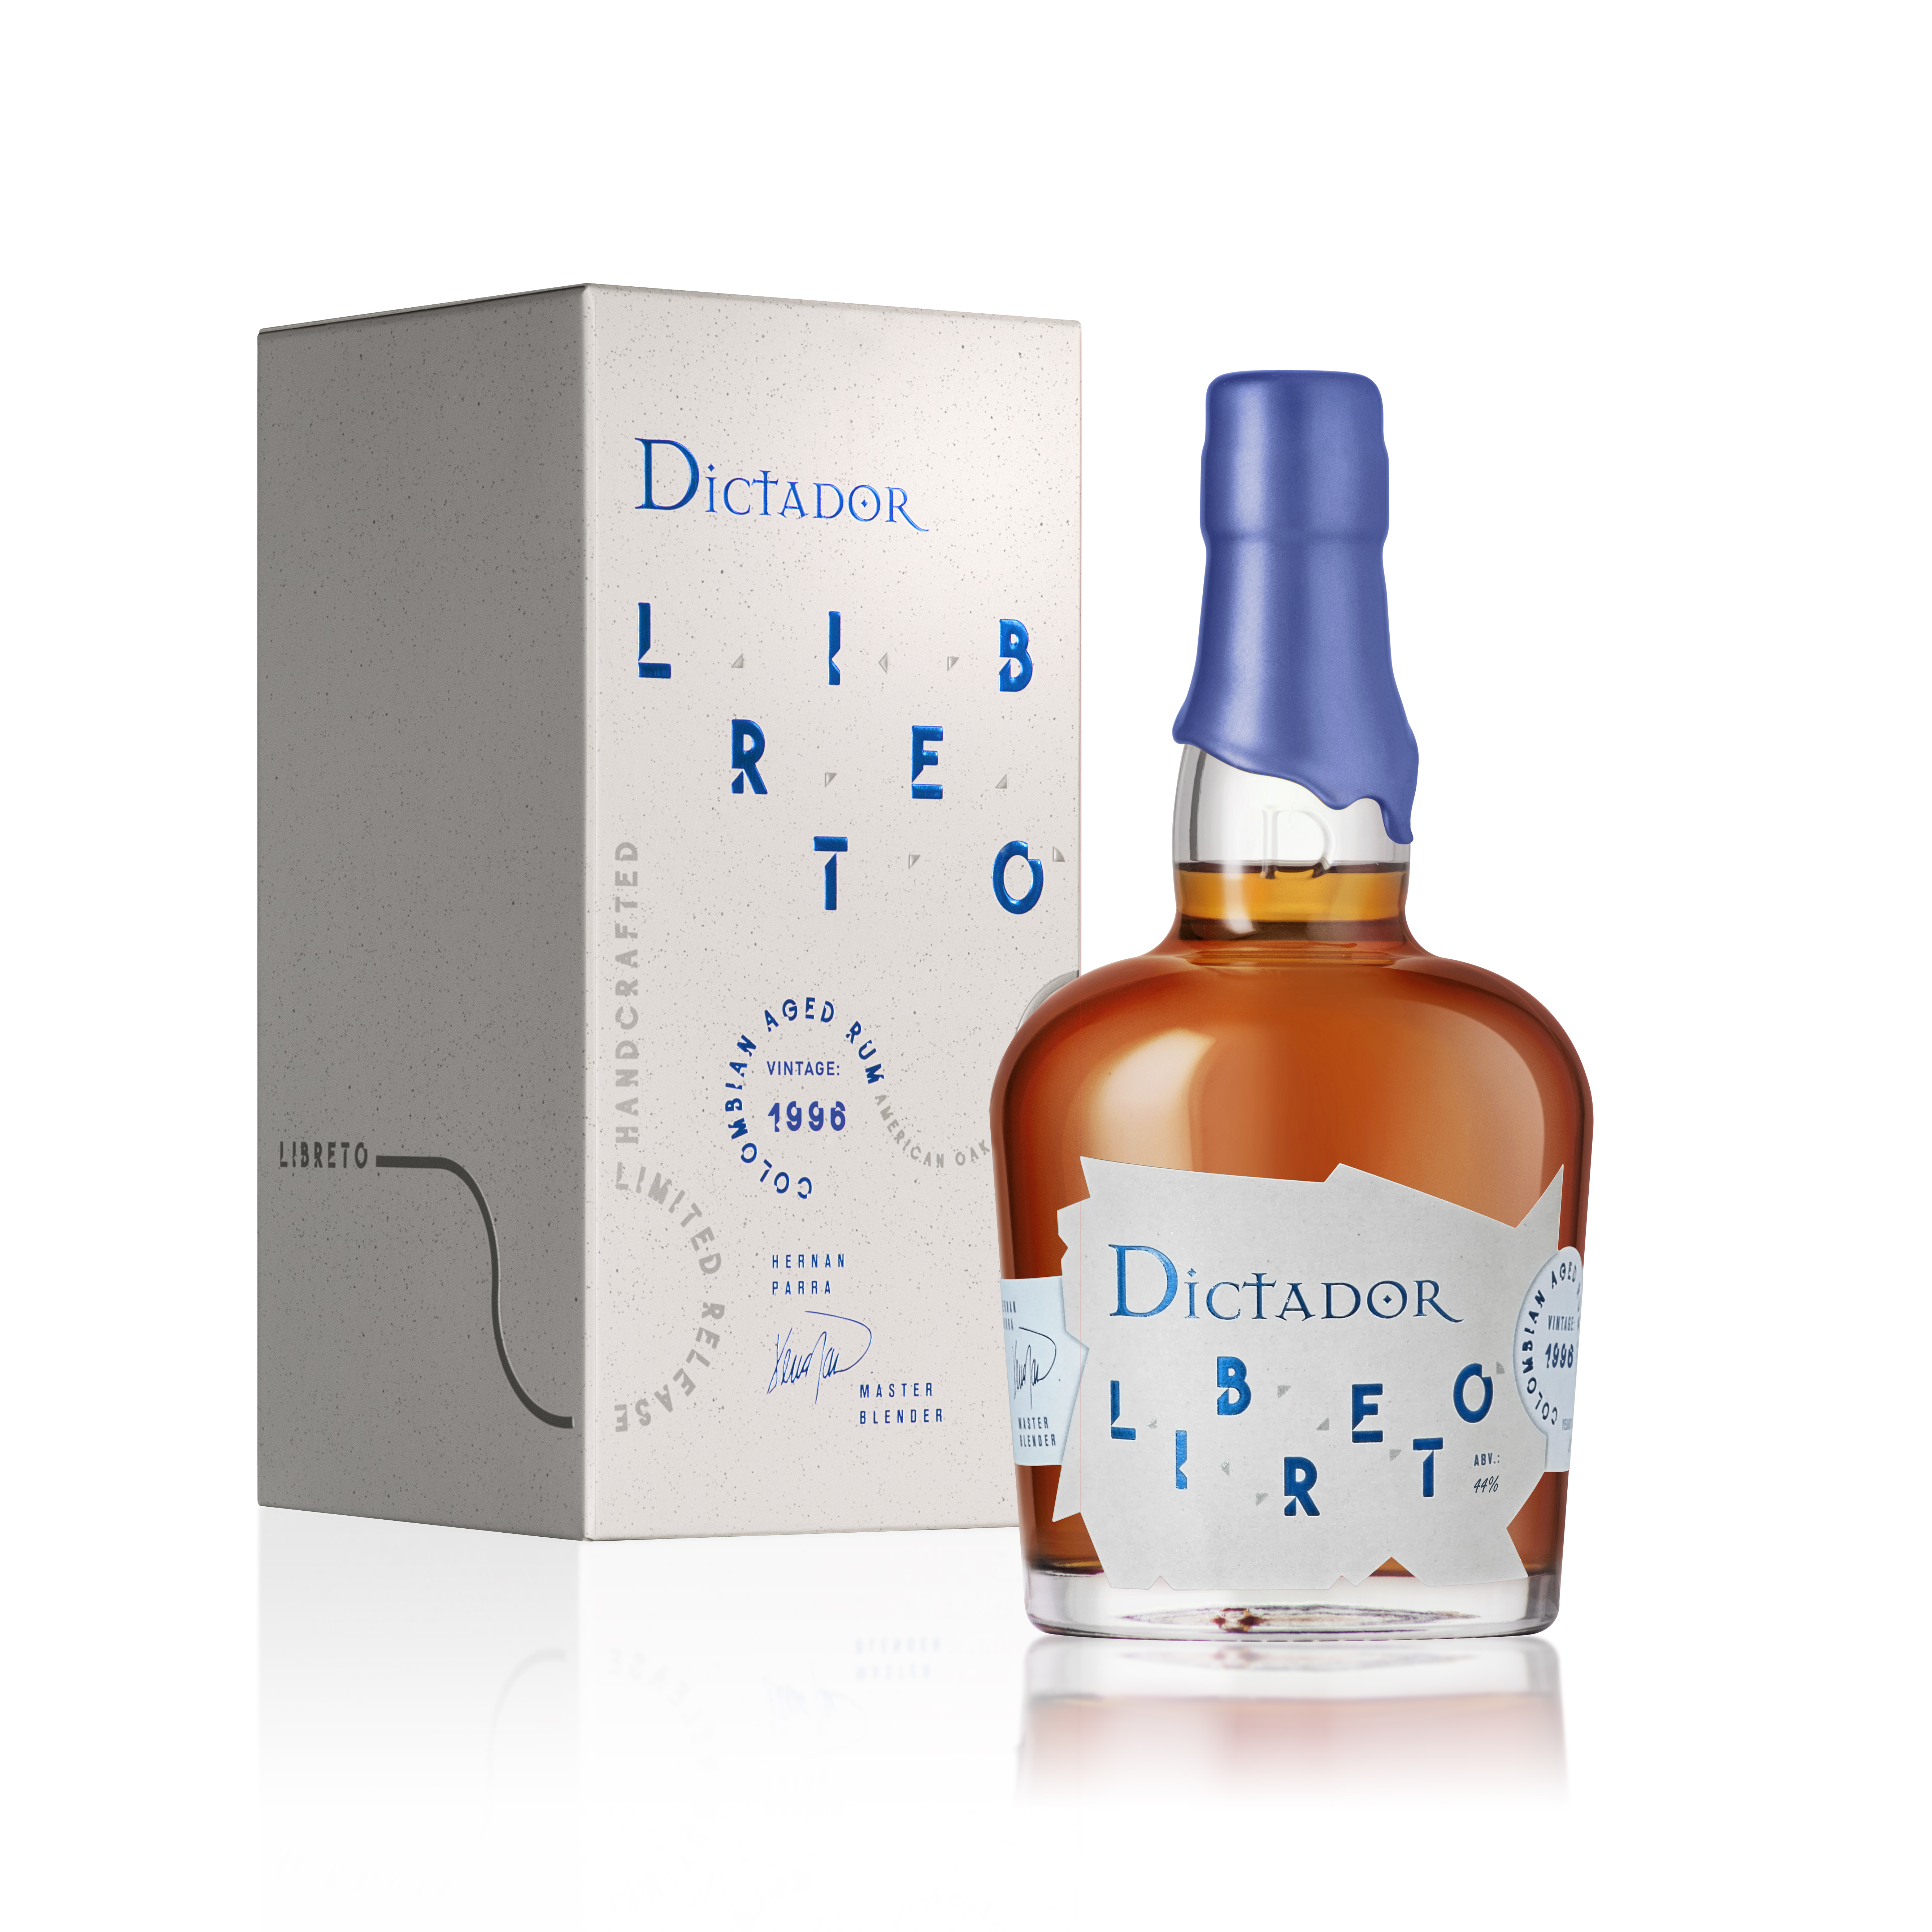 Dictador-LIBRETO-AO-1996-44vol bottle plus GB